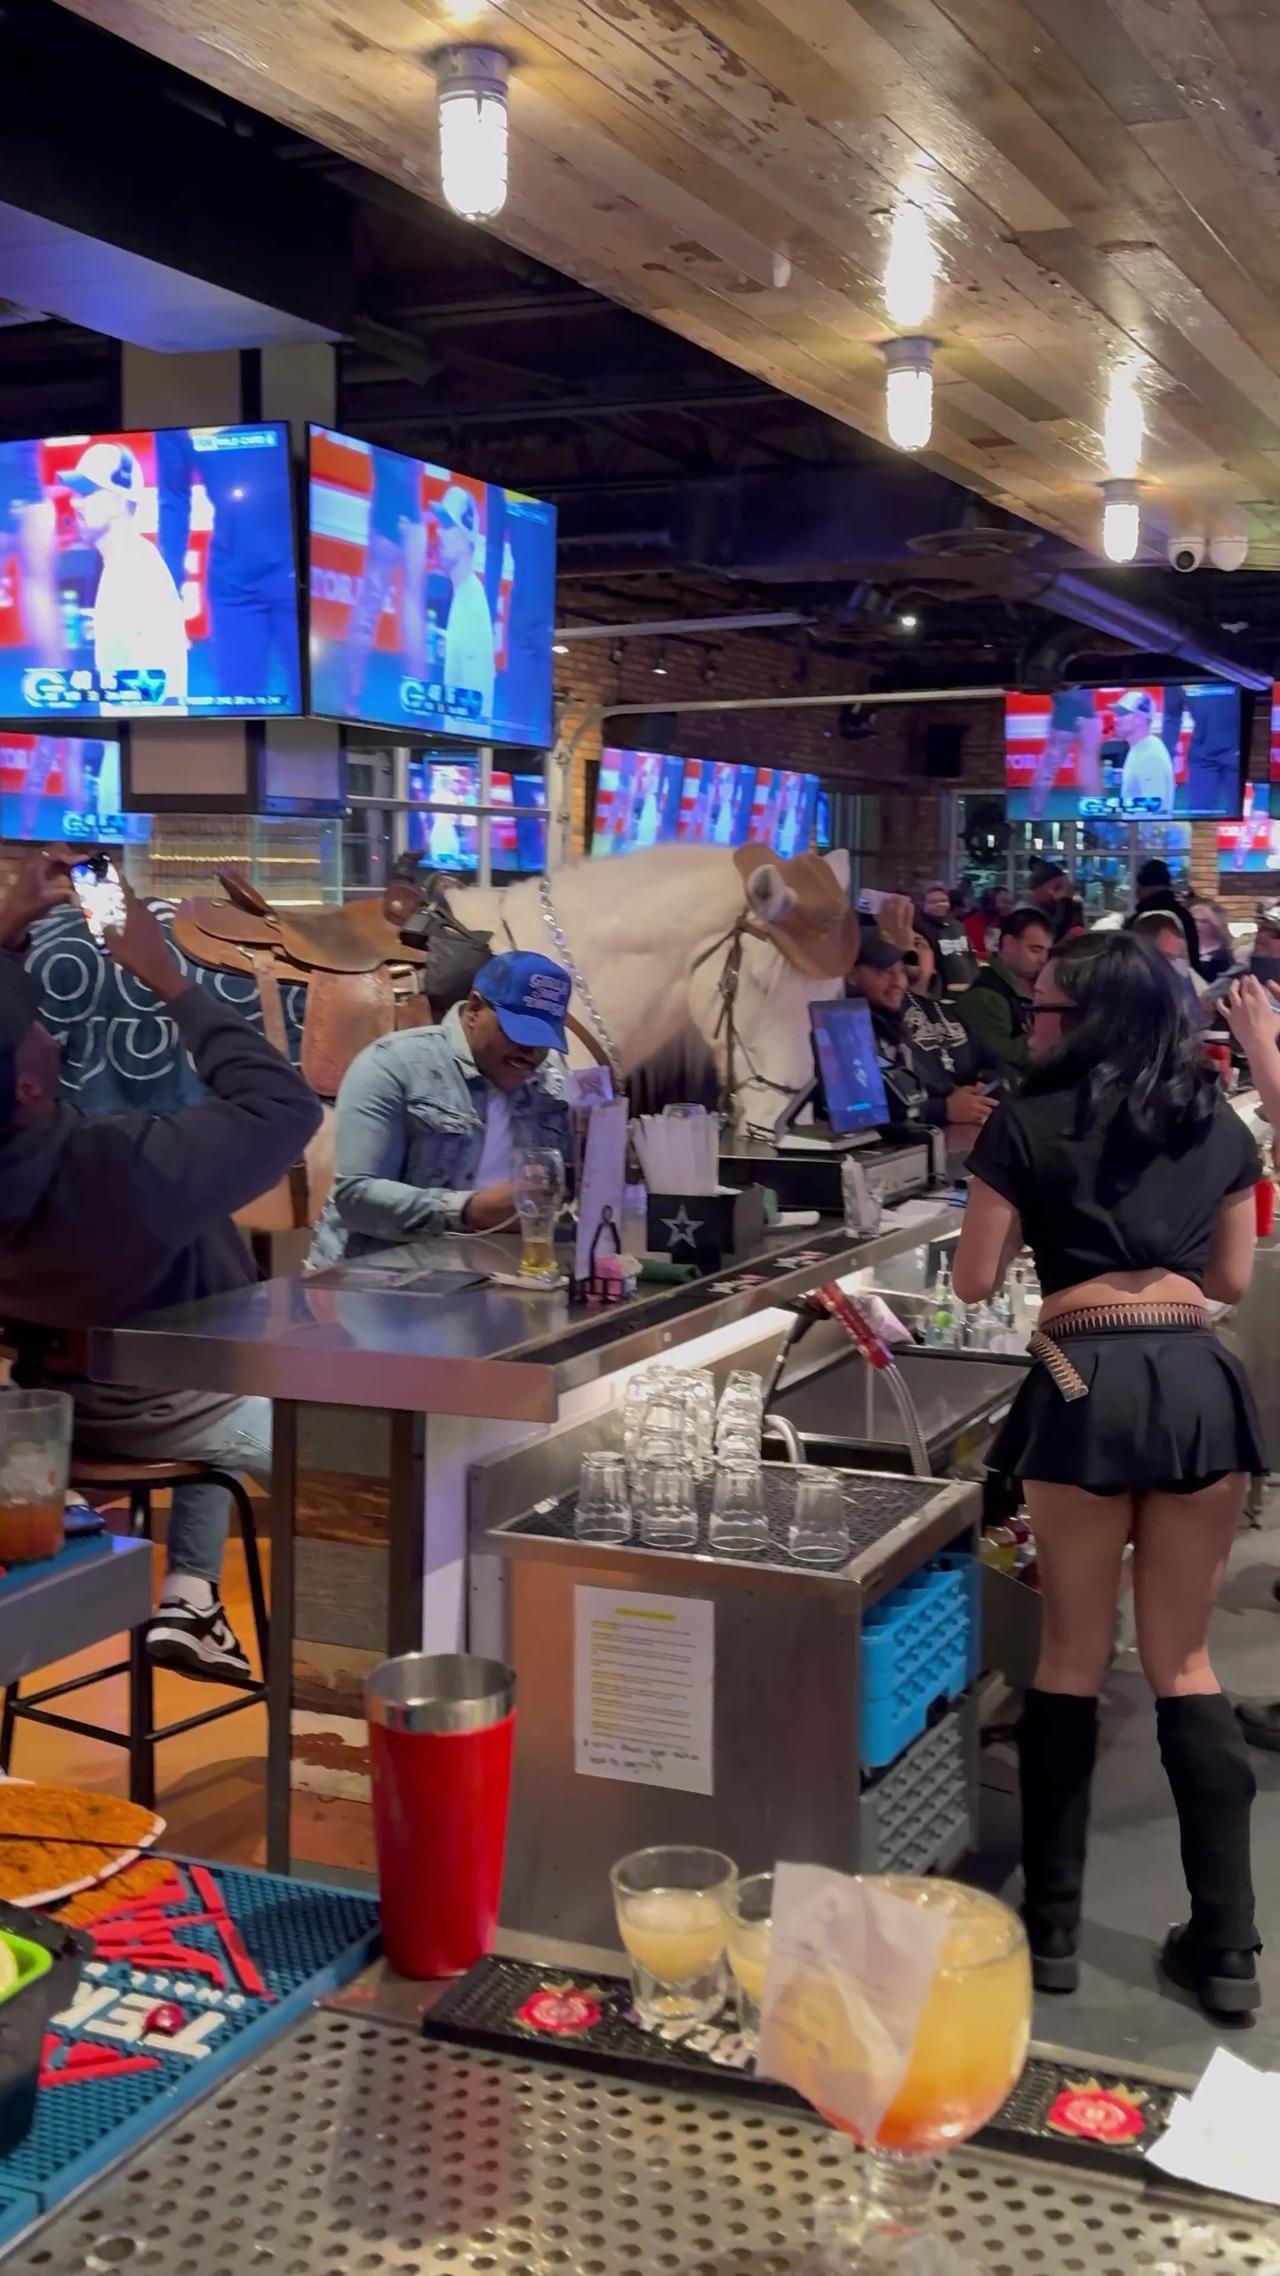 Horse Walks Into a Bar in Texas